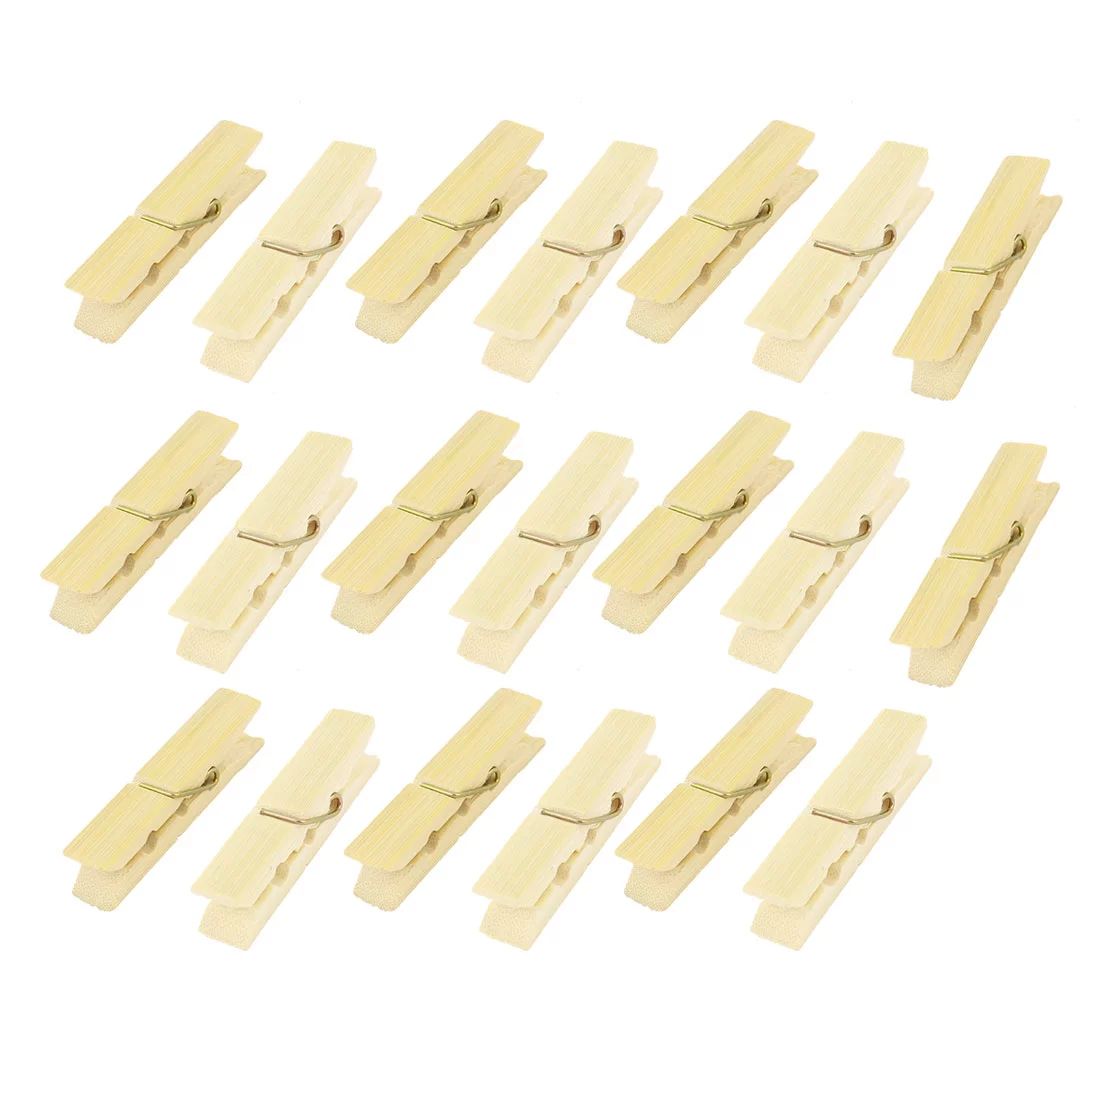 20 Pcs Wood Clothespins Laundry Paper Peg Clip Clothes Pins | Walmart (US)